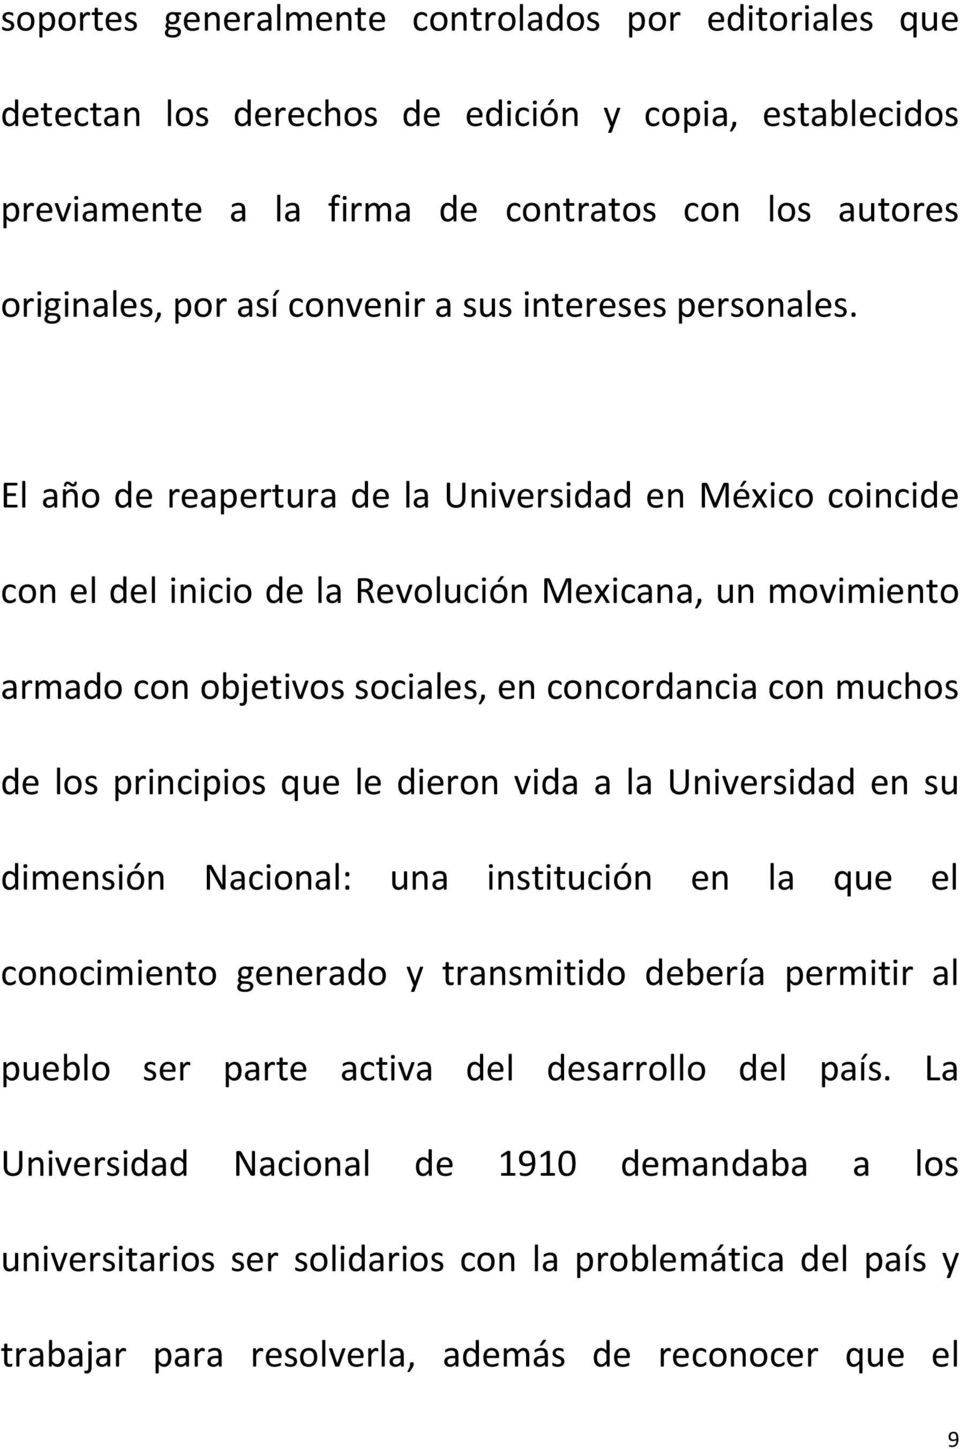 El año de reapertura de la Universidad en México coincide con el del inicio de la Revolución Mexicana, un movimiento armado con objetivos sociales, en concordancia con muchos de los principios